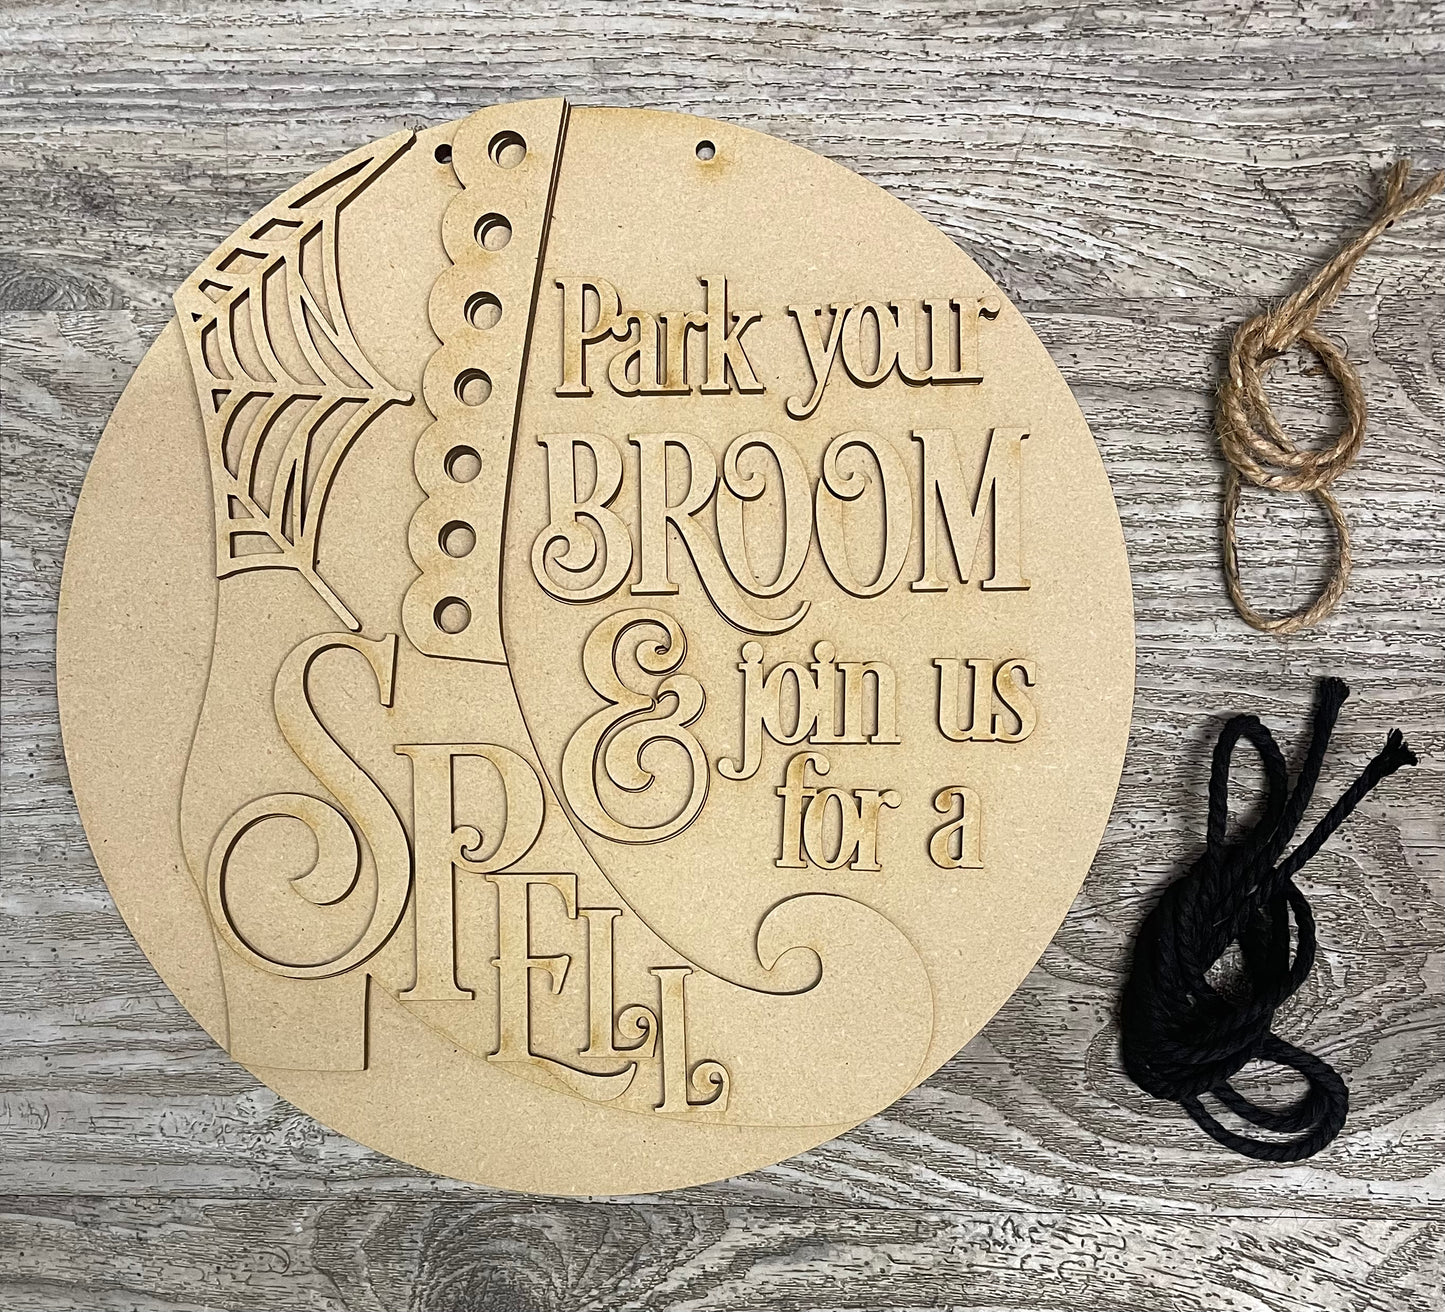 Park Your Broom - Halloween Door Sign Kit, DIY Kit - unpainted wood cutouts